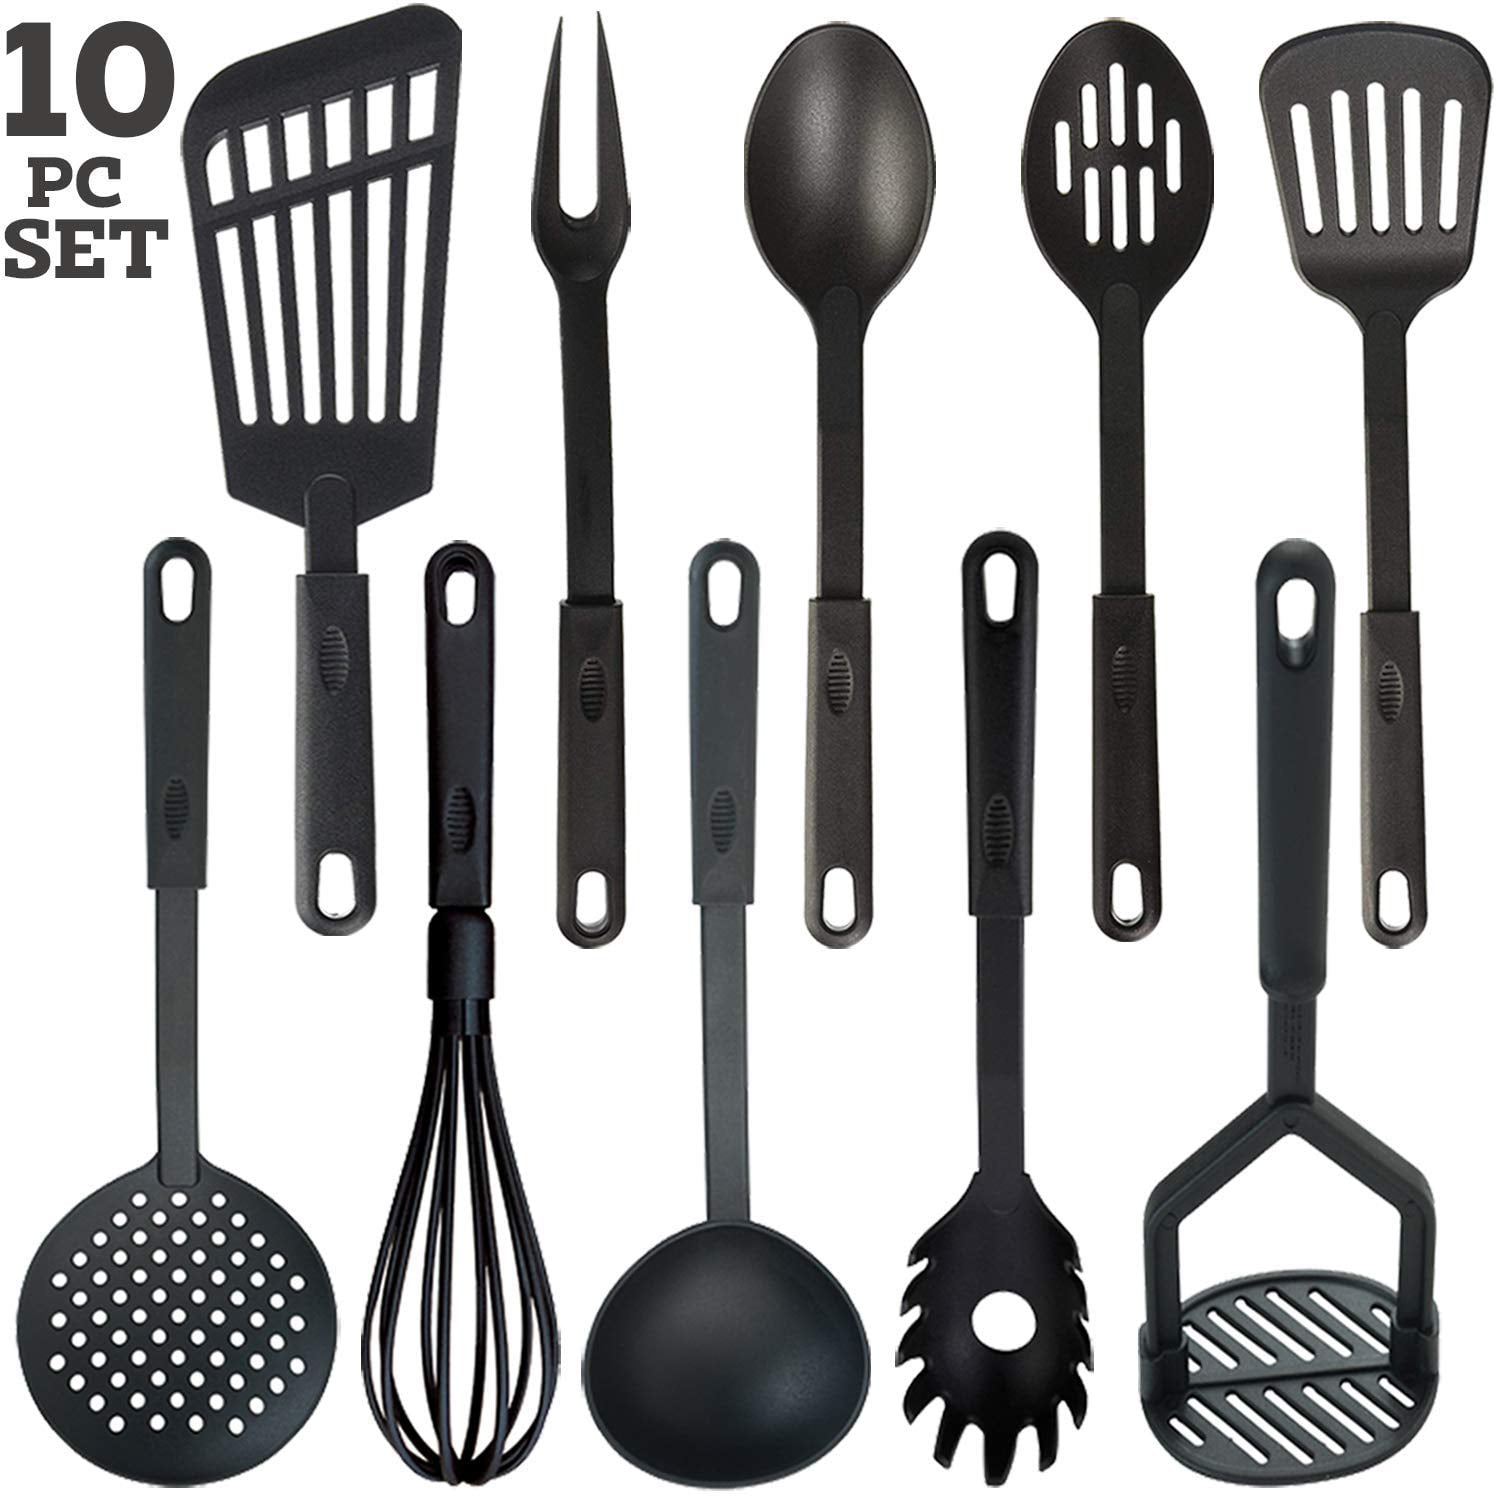 Spoon Ladle Masher Skimmer Turner Plastic Black Chef Aid Kitchen Utensils 